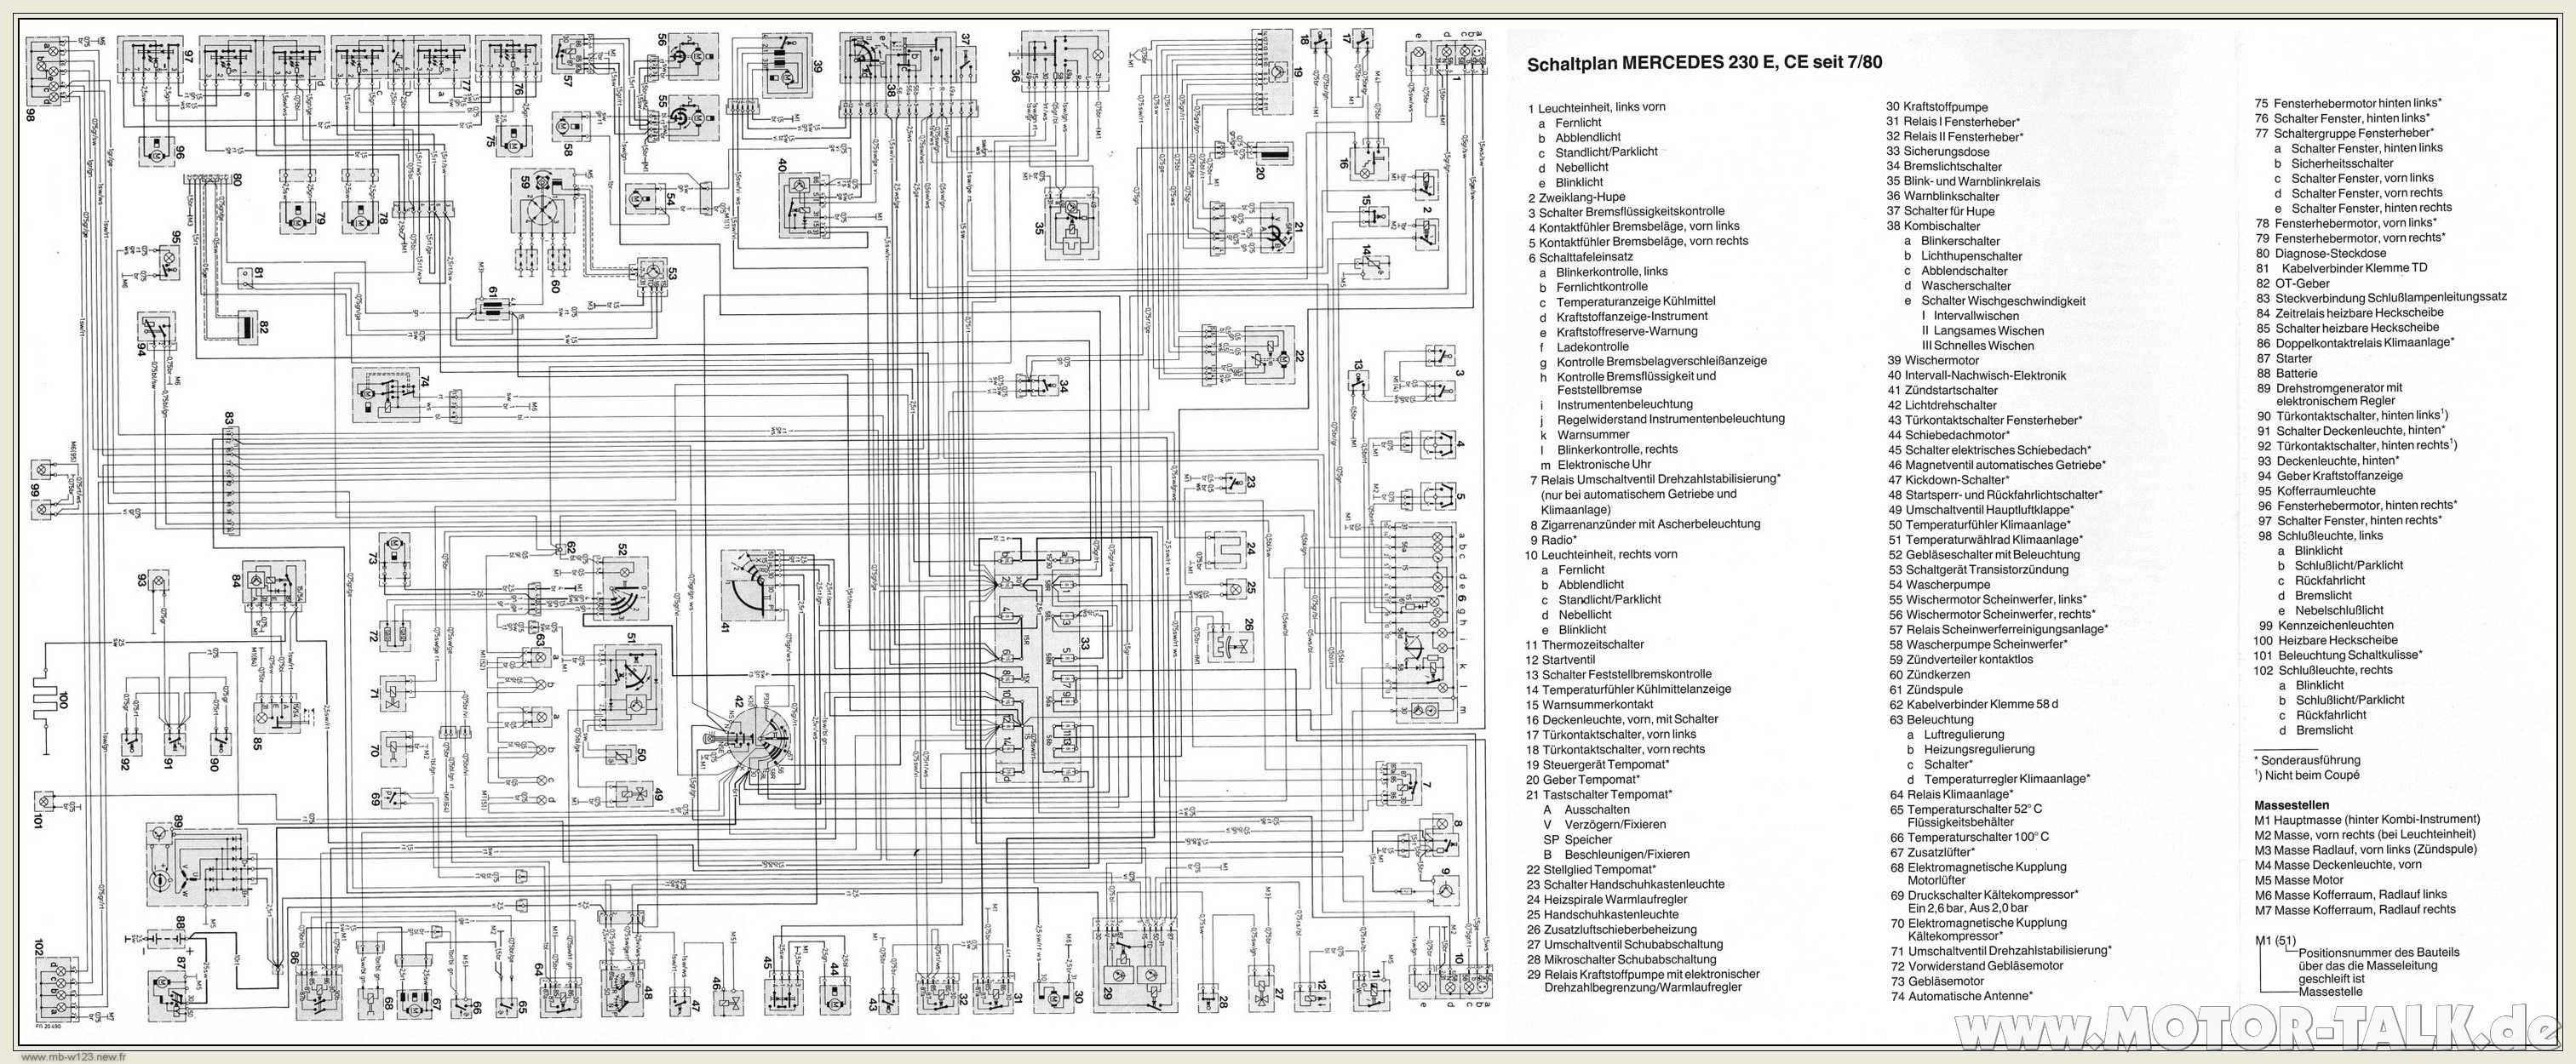 Mercedes w123: описание, технические характеристики, тюнинг. mercedes-benz w123